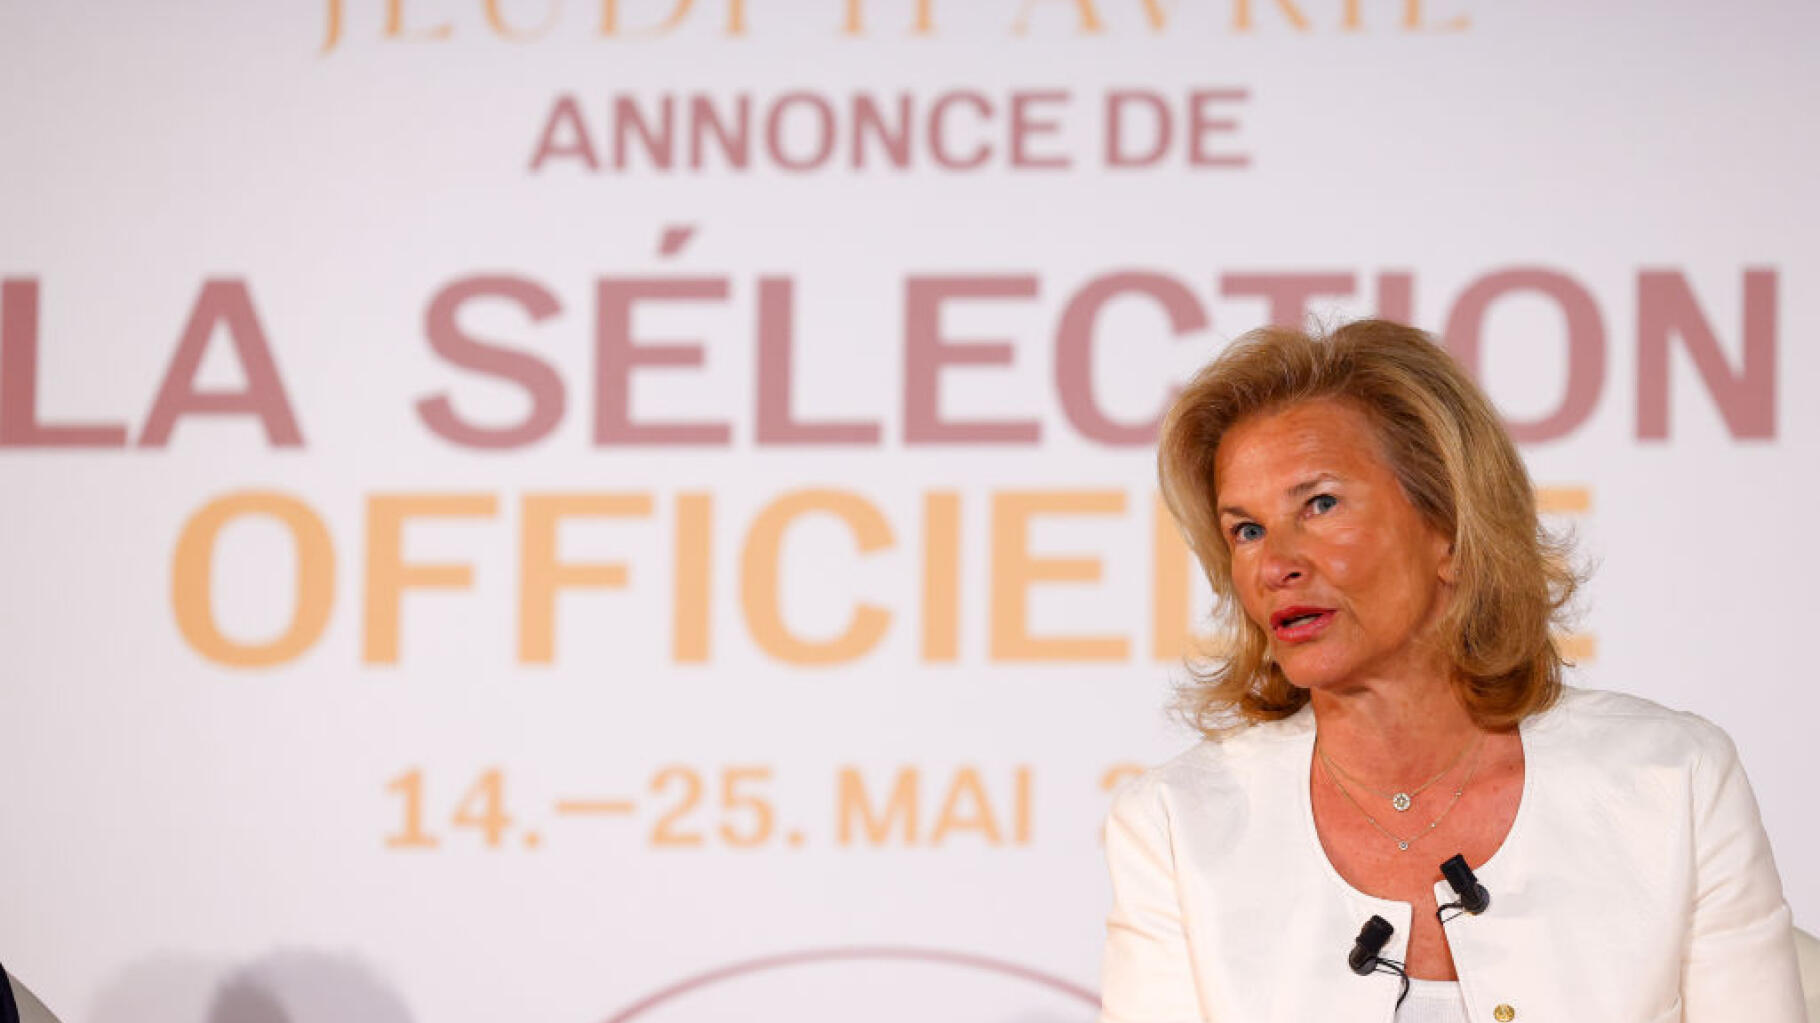   #MeToo au Festival de Cannes : en cas d’accusation d’un participant, la présidente plaide le « cas par cas »  